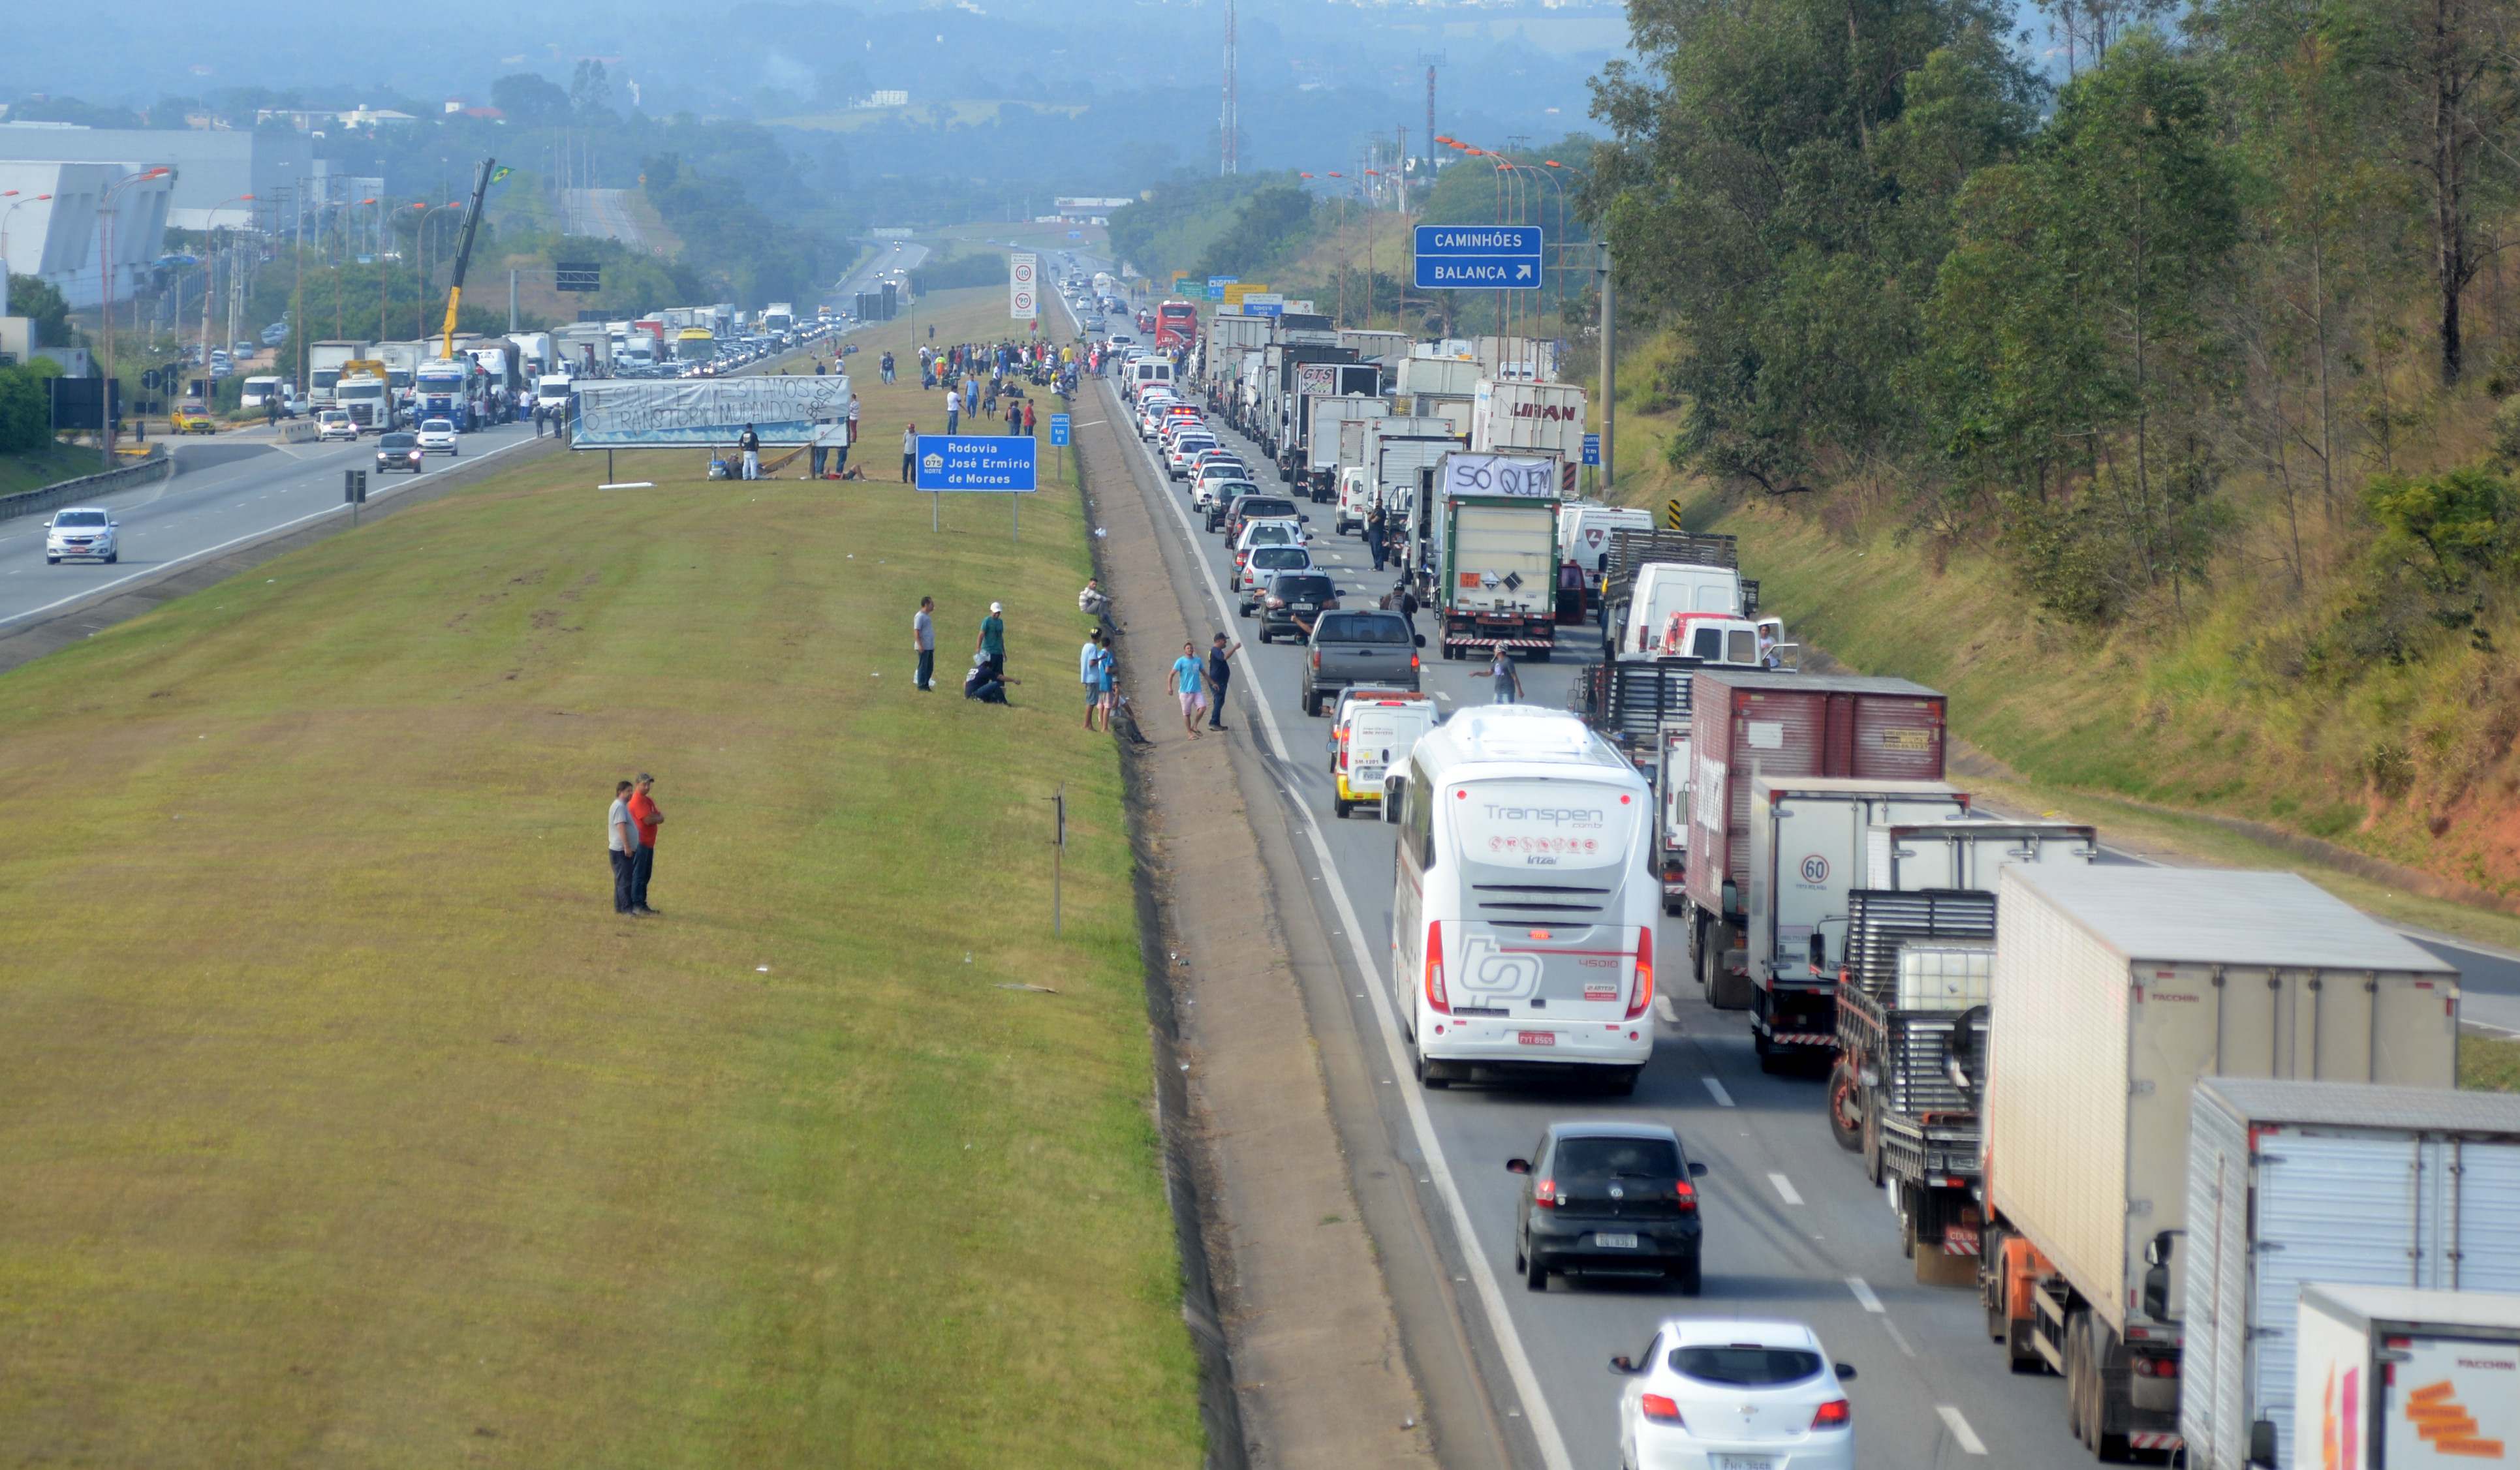 Imagem da Castelinho, quando em maio de 2018, centenas de caminhoneiros interditaram parte da rodovia.